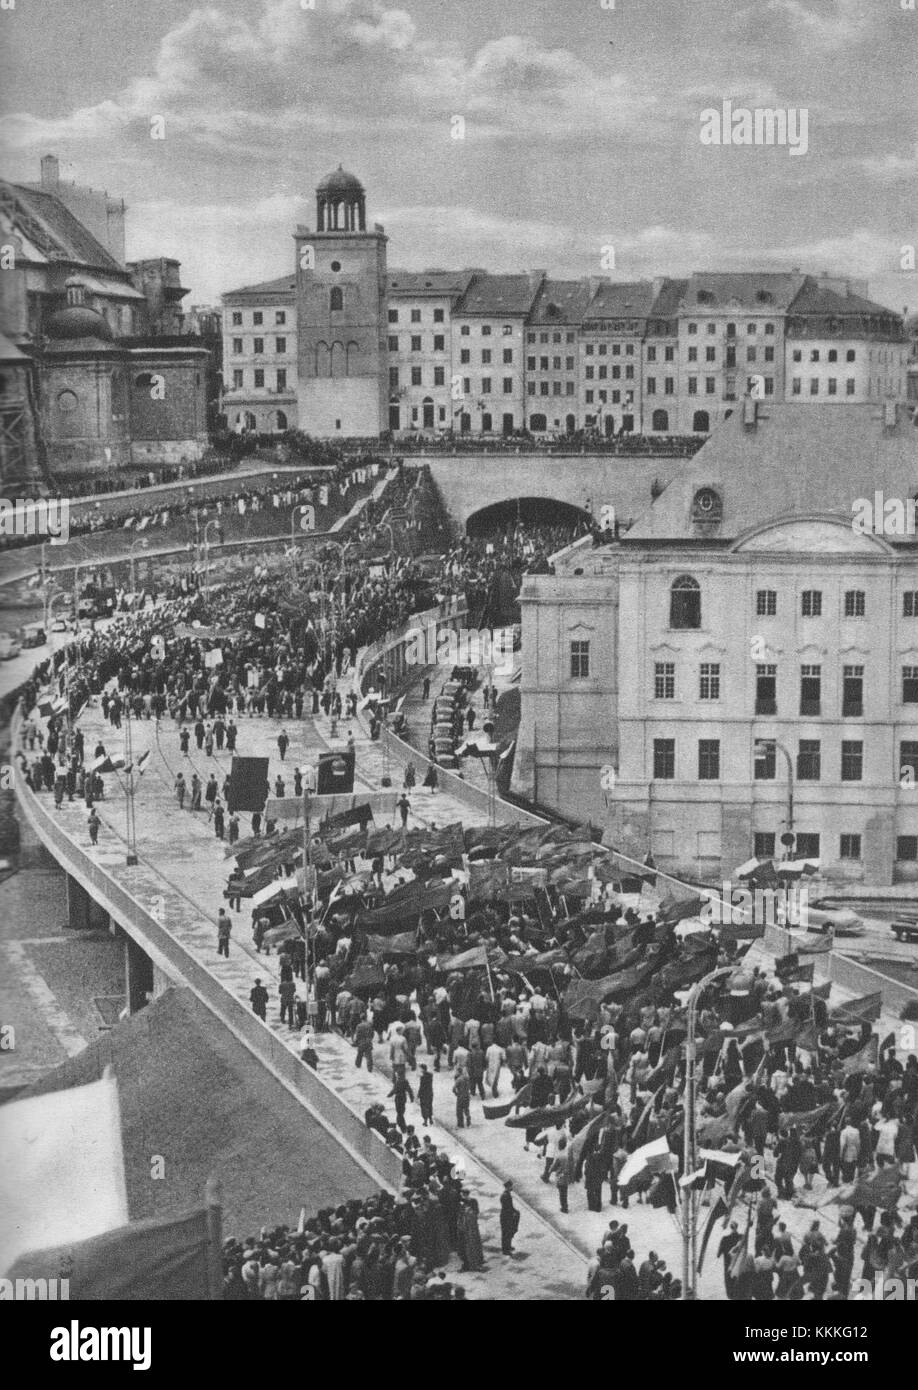 Otwarcie Trasy W-Z w Warszawie 22 lipca 1949 Stock Photo